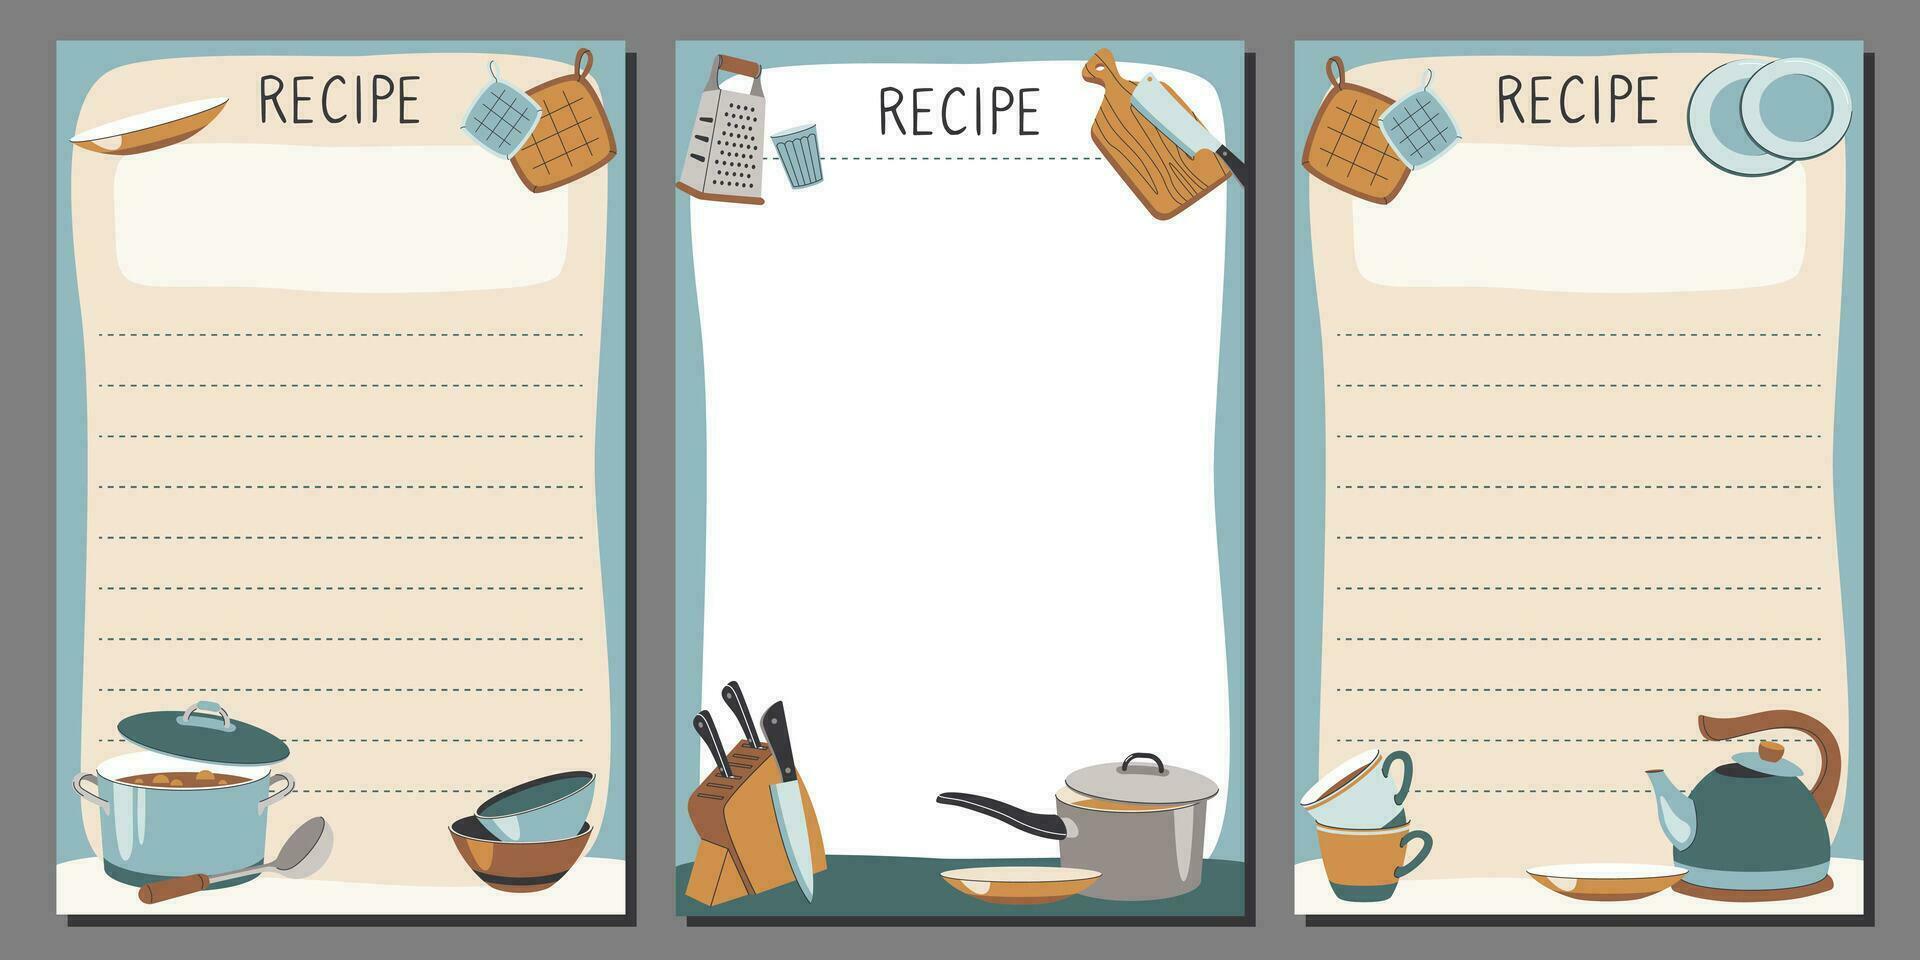 vektor anteckningsblock mall med recept. kök recept bok i en enkel stil med illustrationer